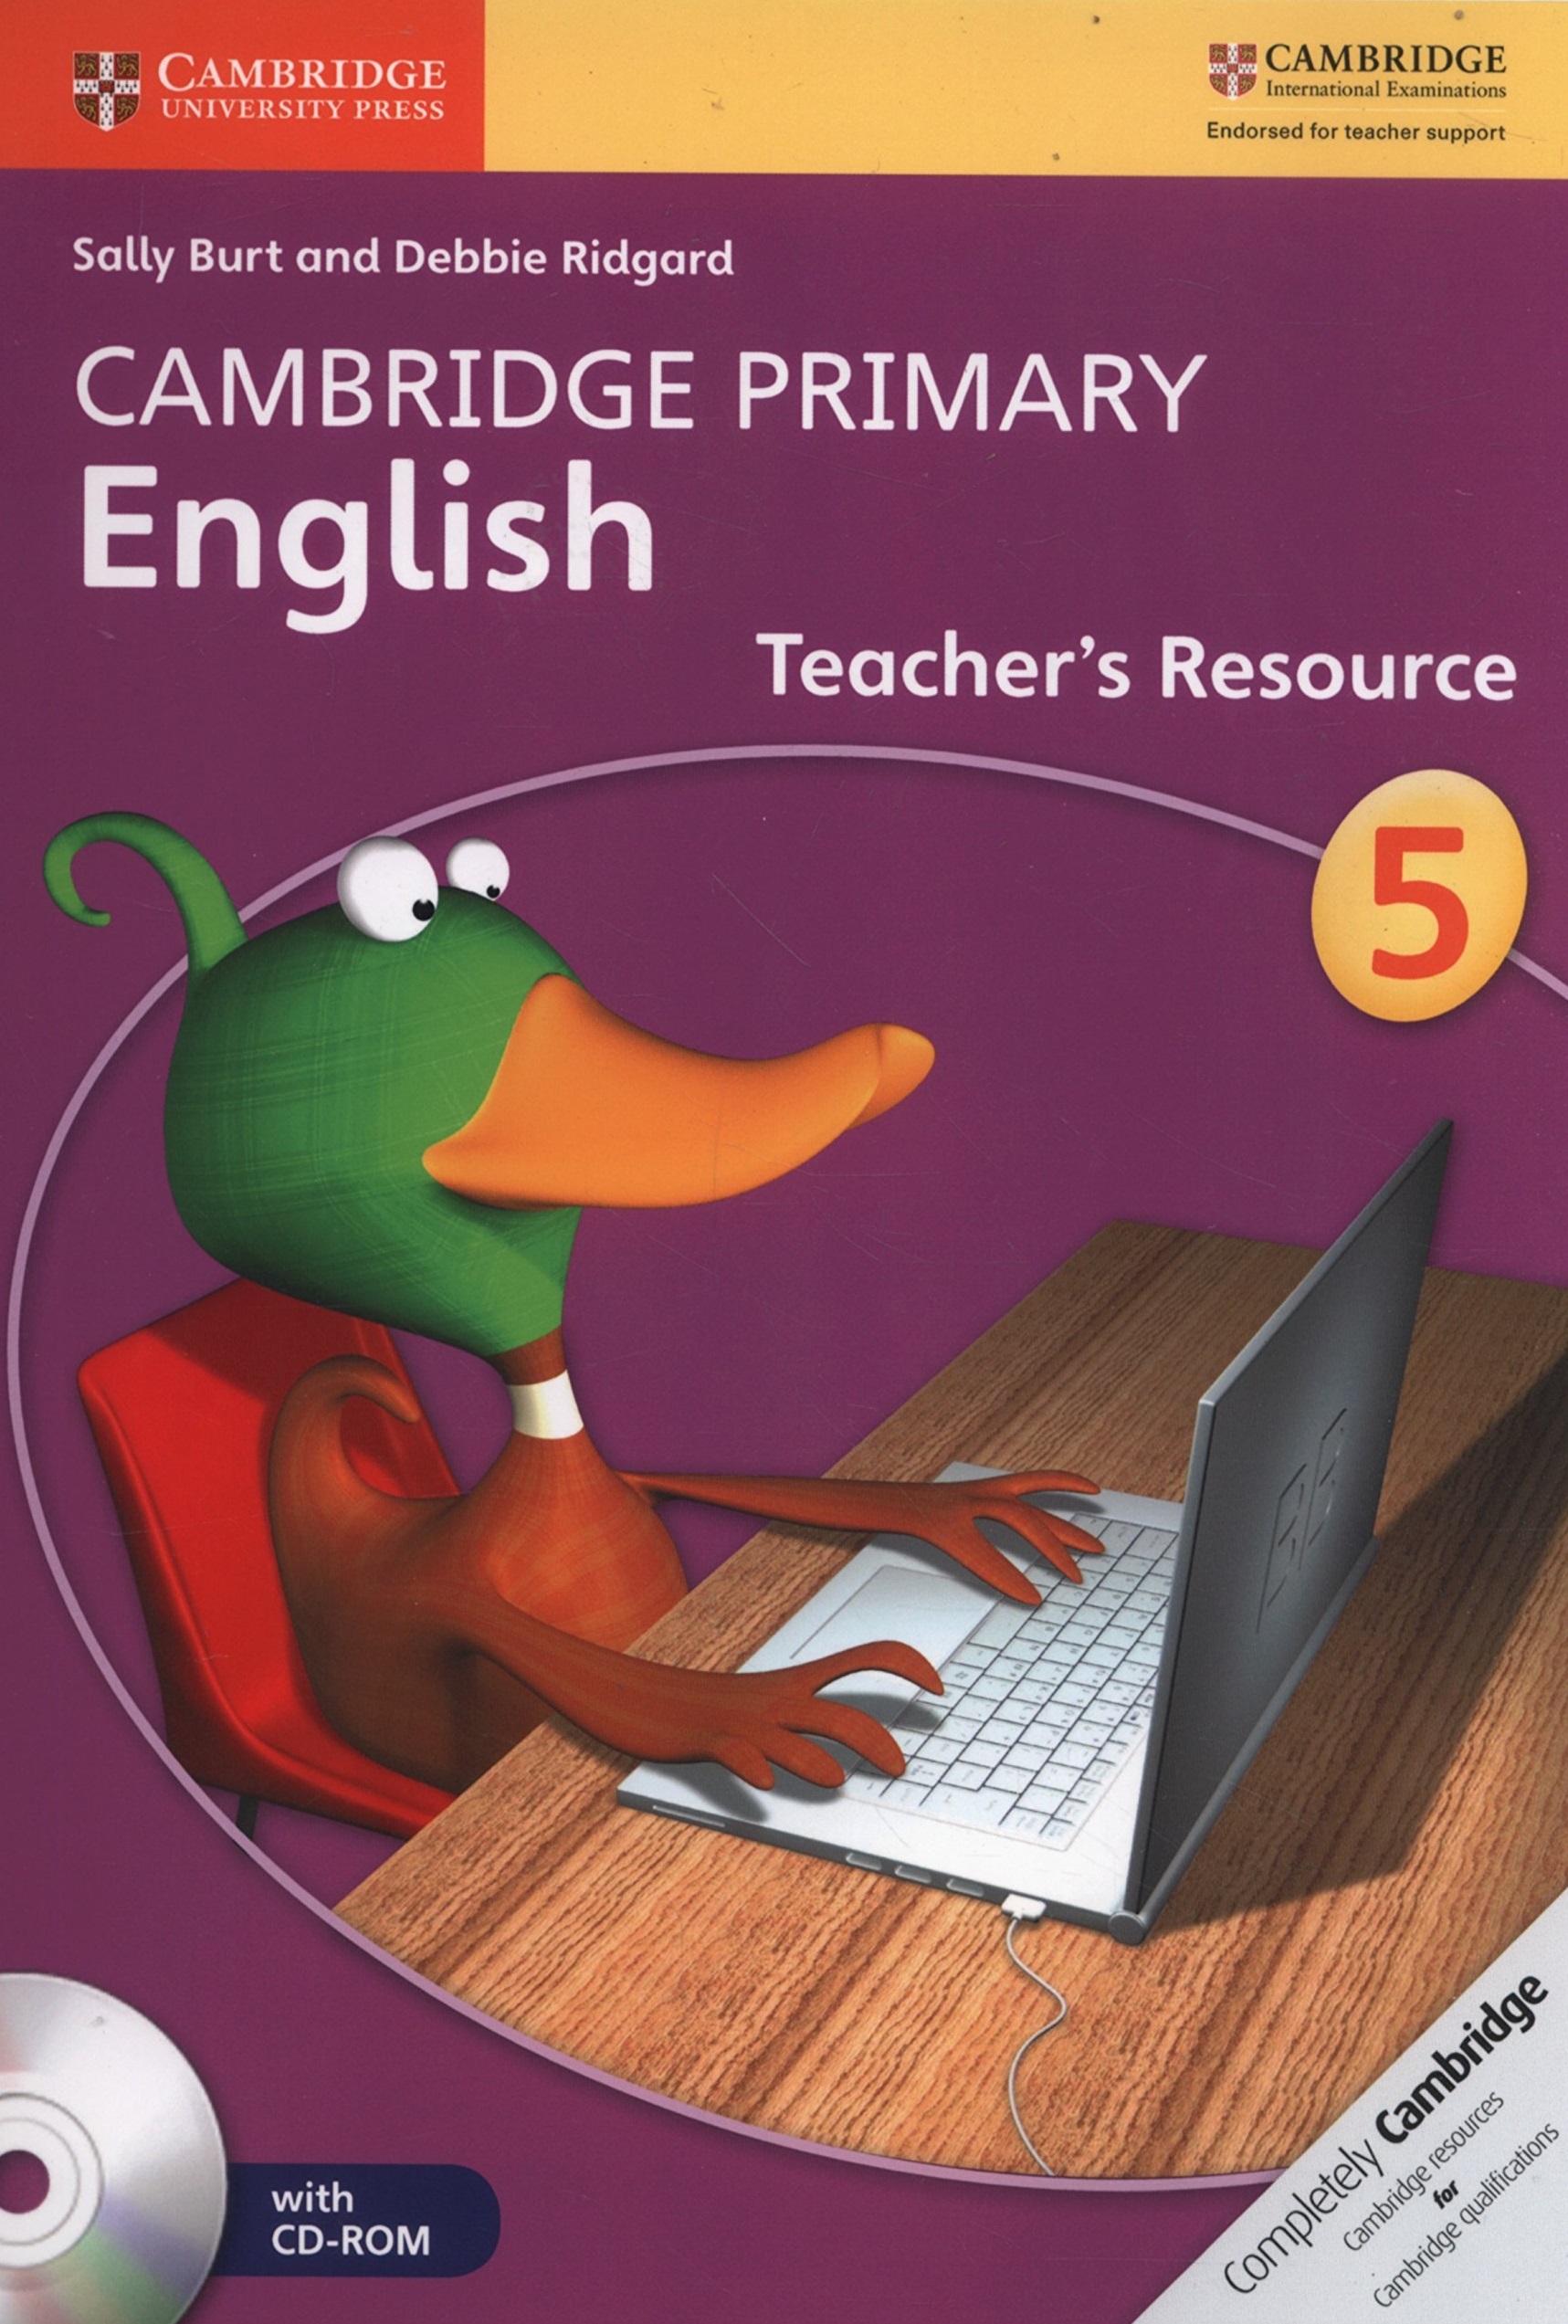 Cambridge teachers book. Cambridge Primary English. Cambridge Primary English 2. Cambridge University Press. Cambridge Primary учебники.